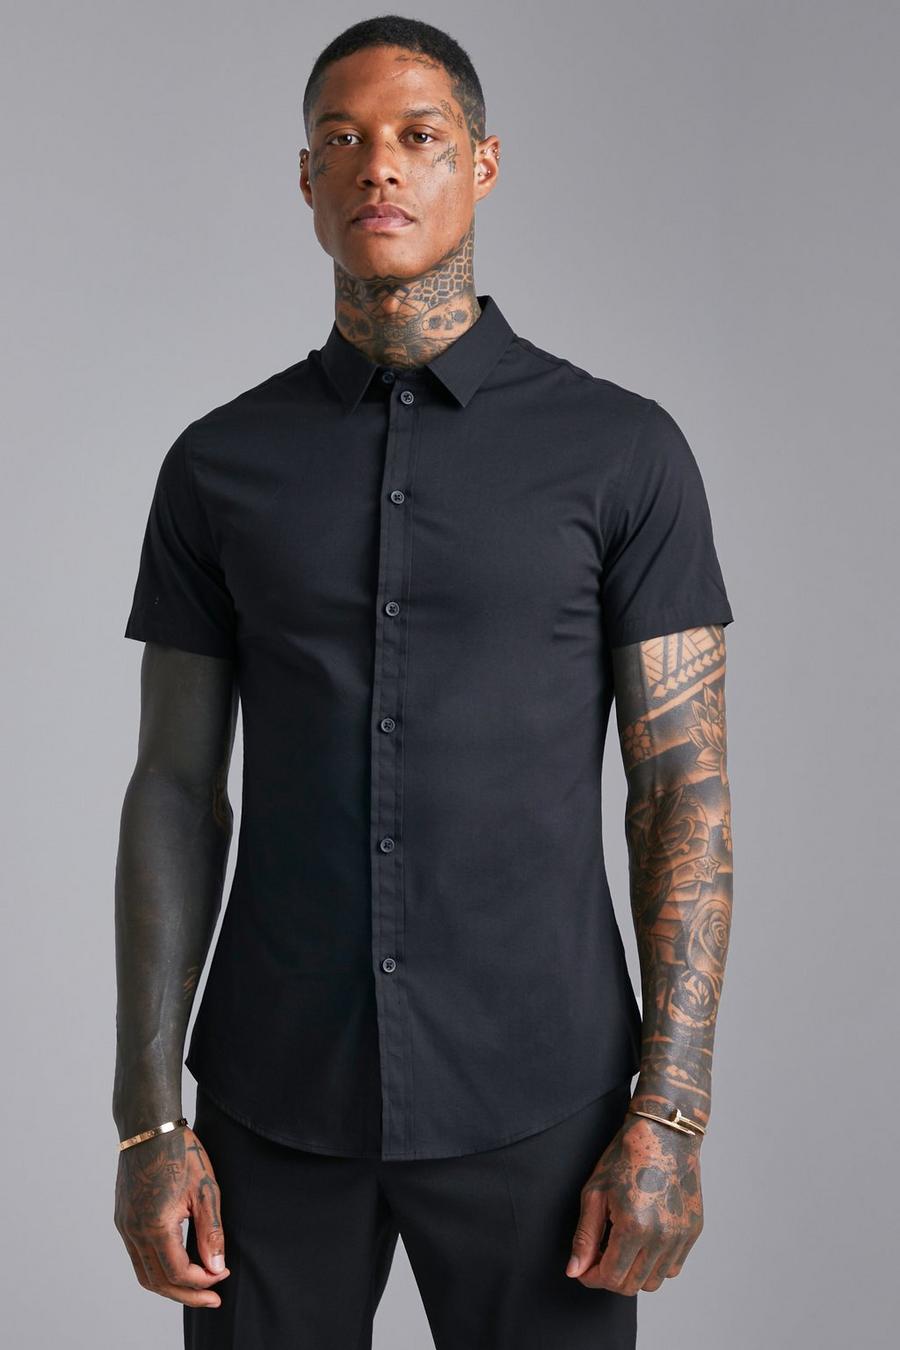 Black noir Short Sleeve Muscle Shirt